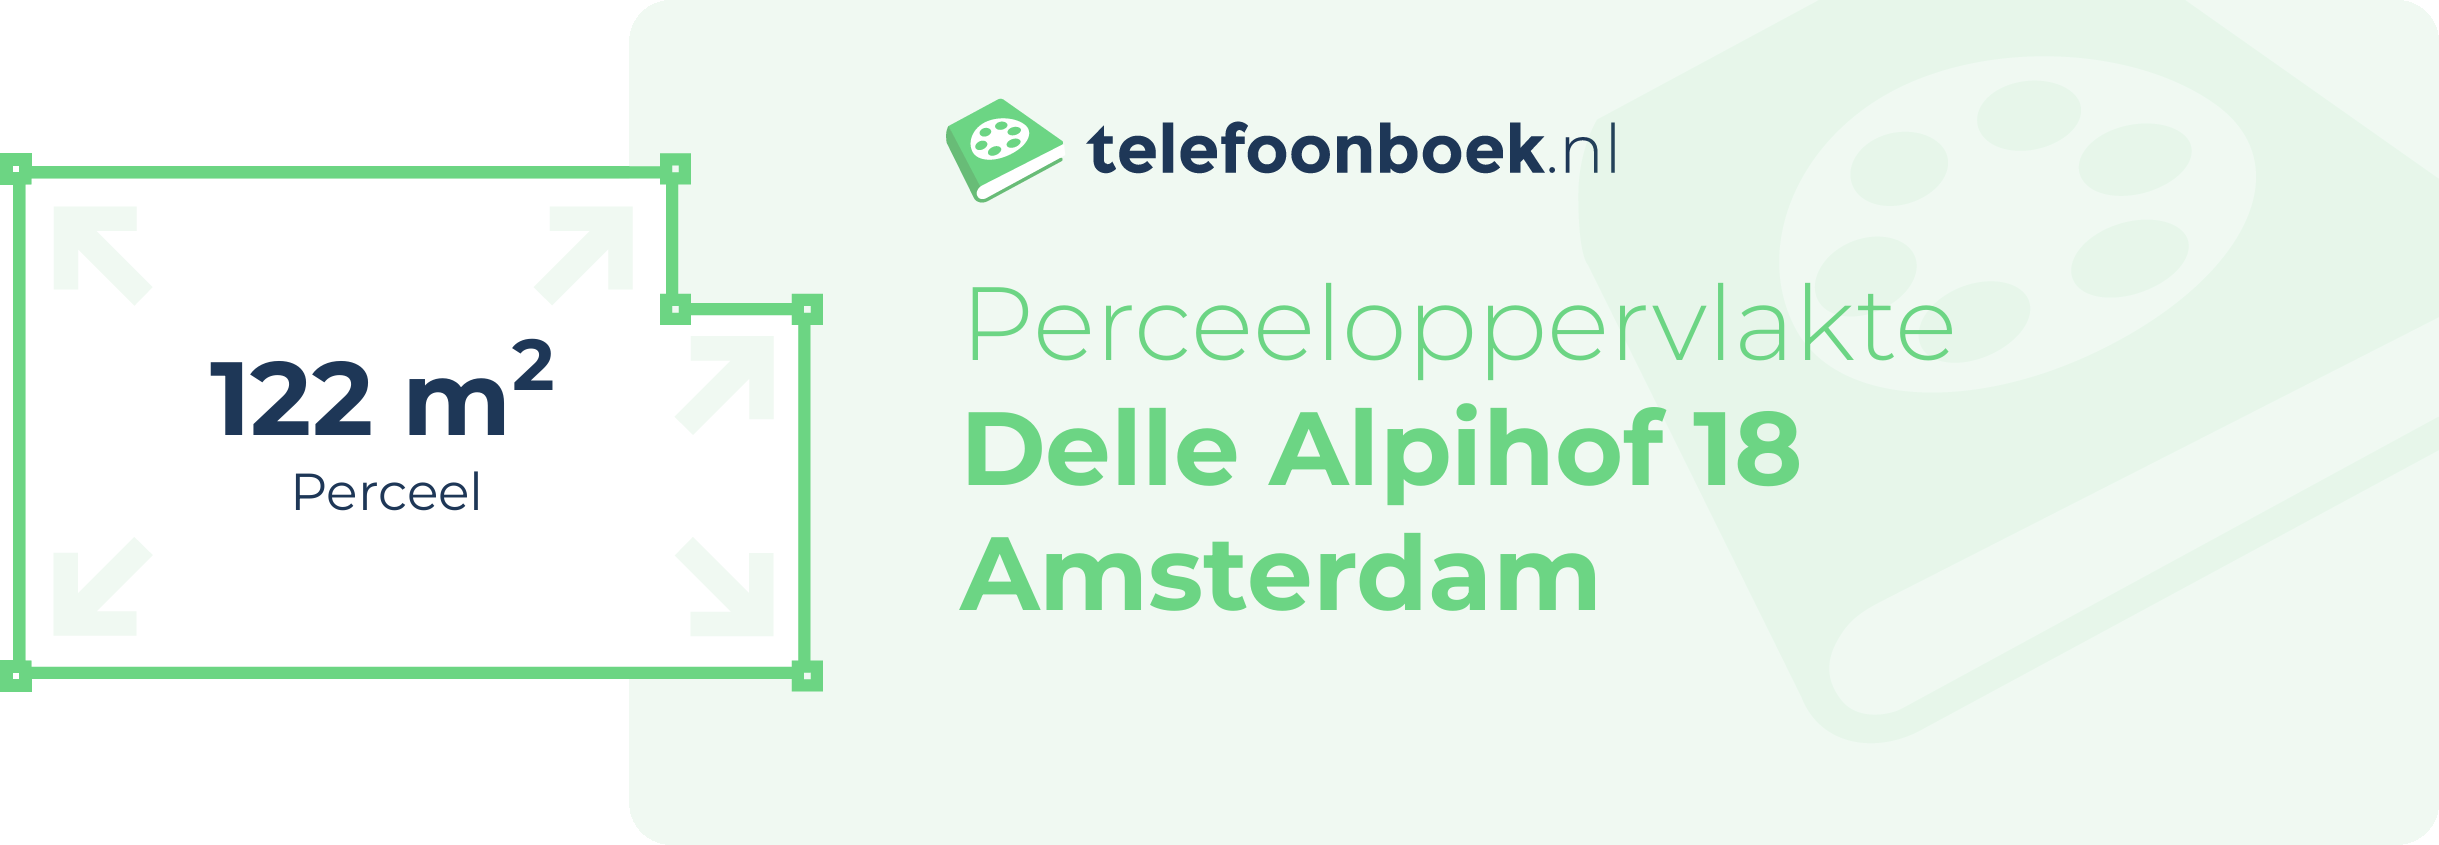 Perceeloppervlakte Delle Alpihof 18 Amsterdam